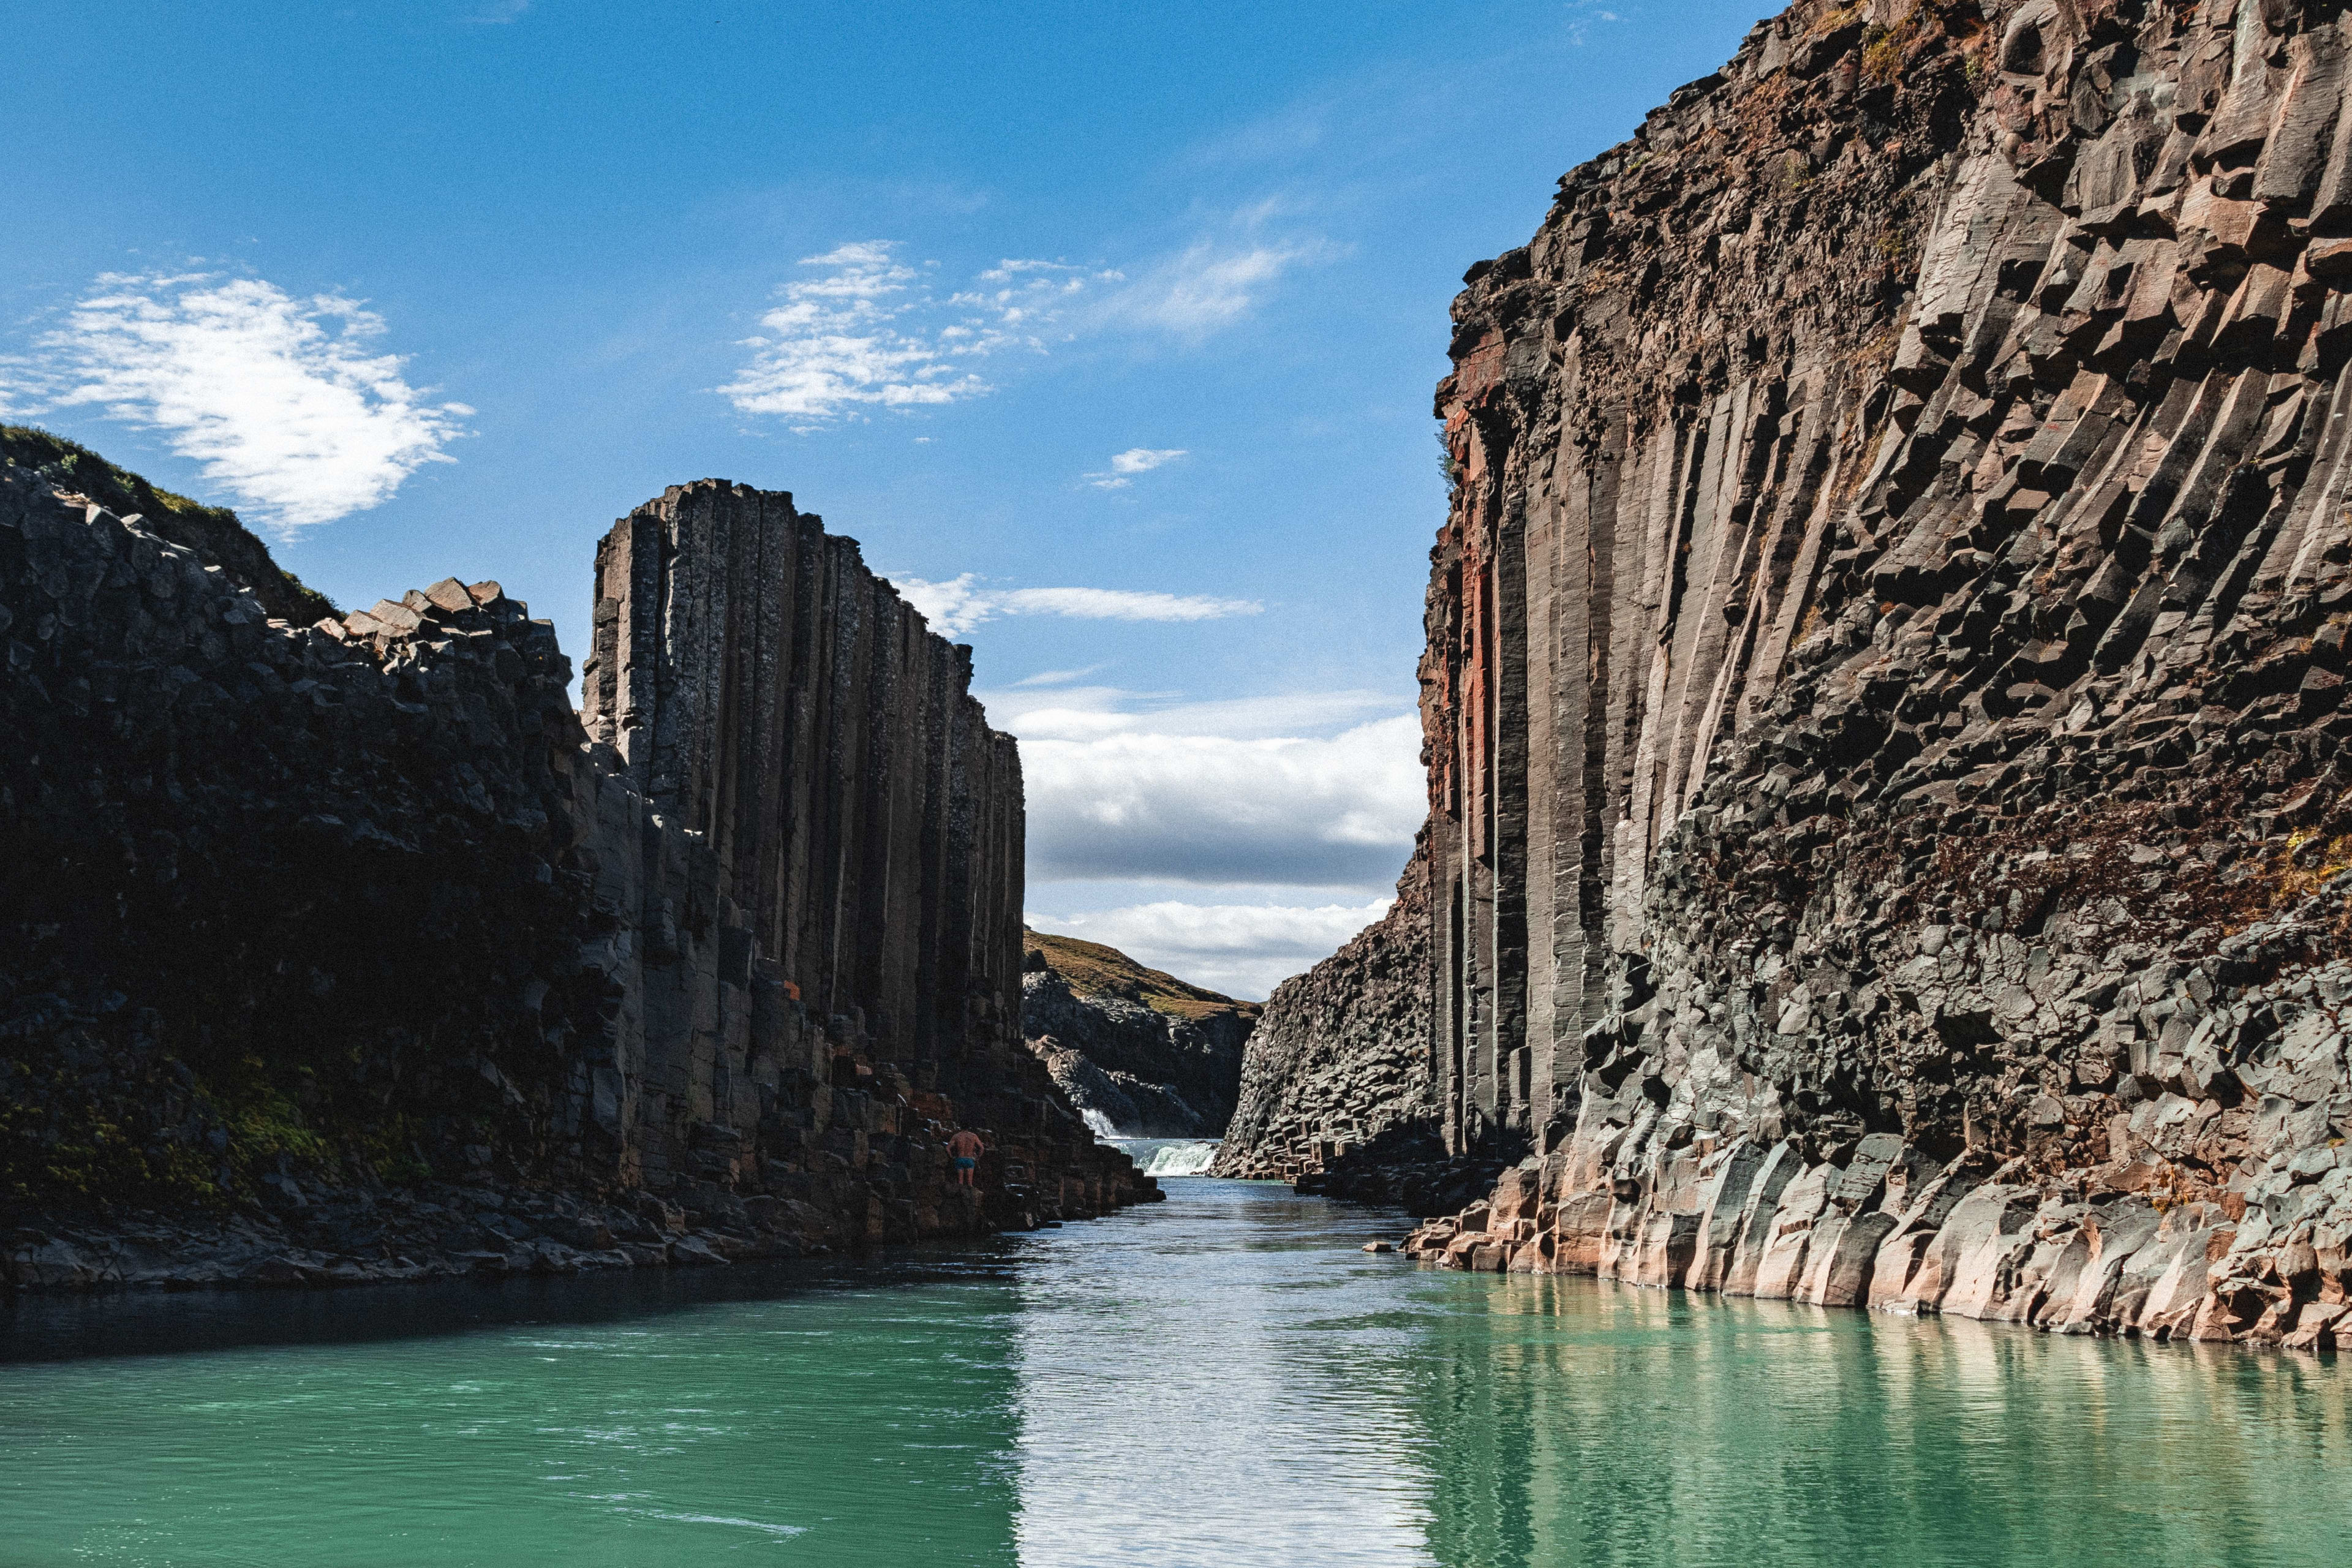 Studlagil canyon with basalt columns